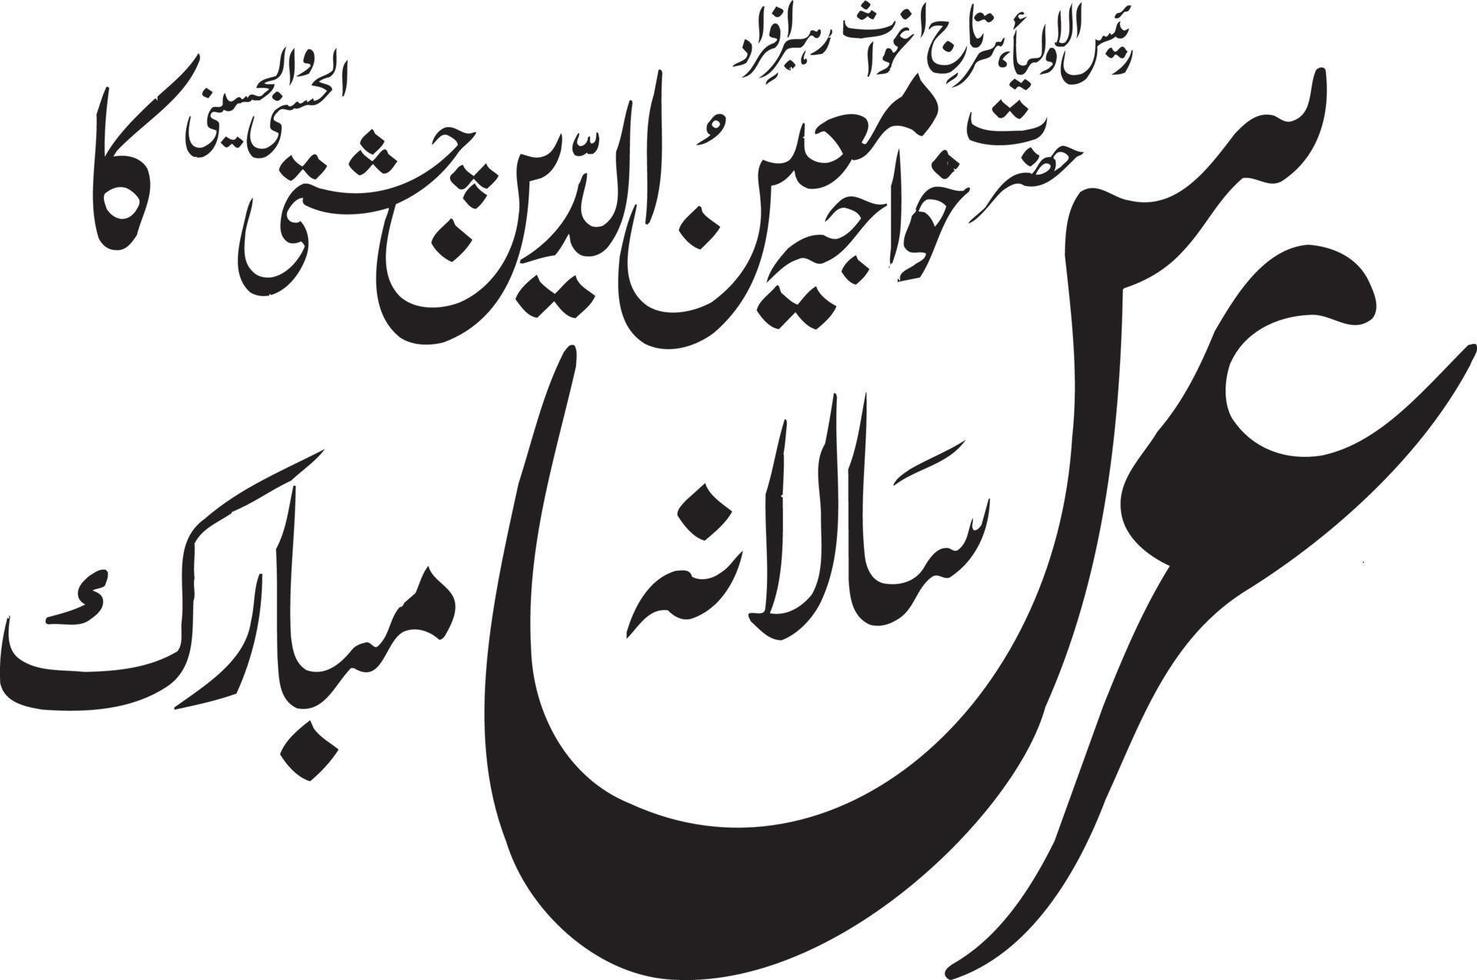 kawaja moen aleen chishti ka salana ors mubarak Islamitisch Urdu schoonschrift vrij vector